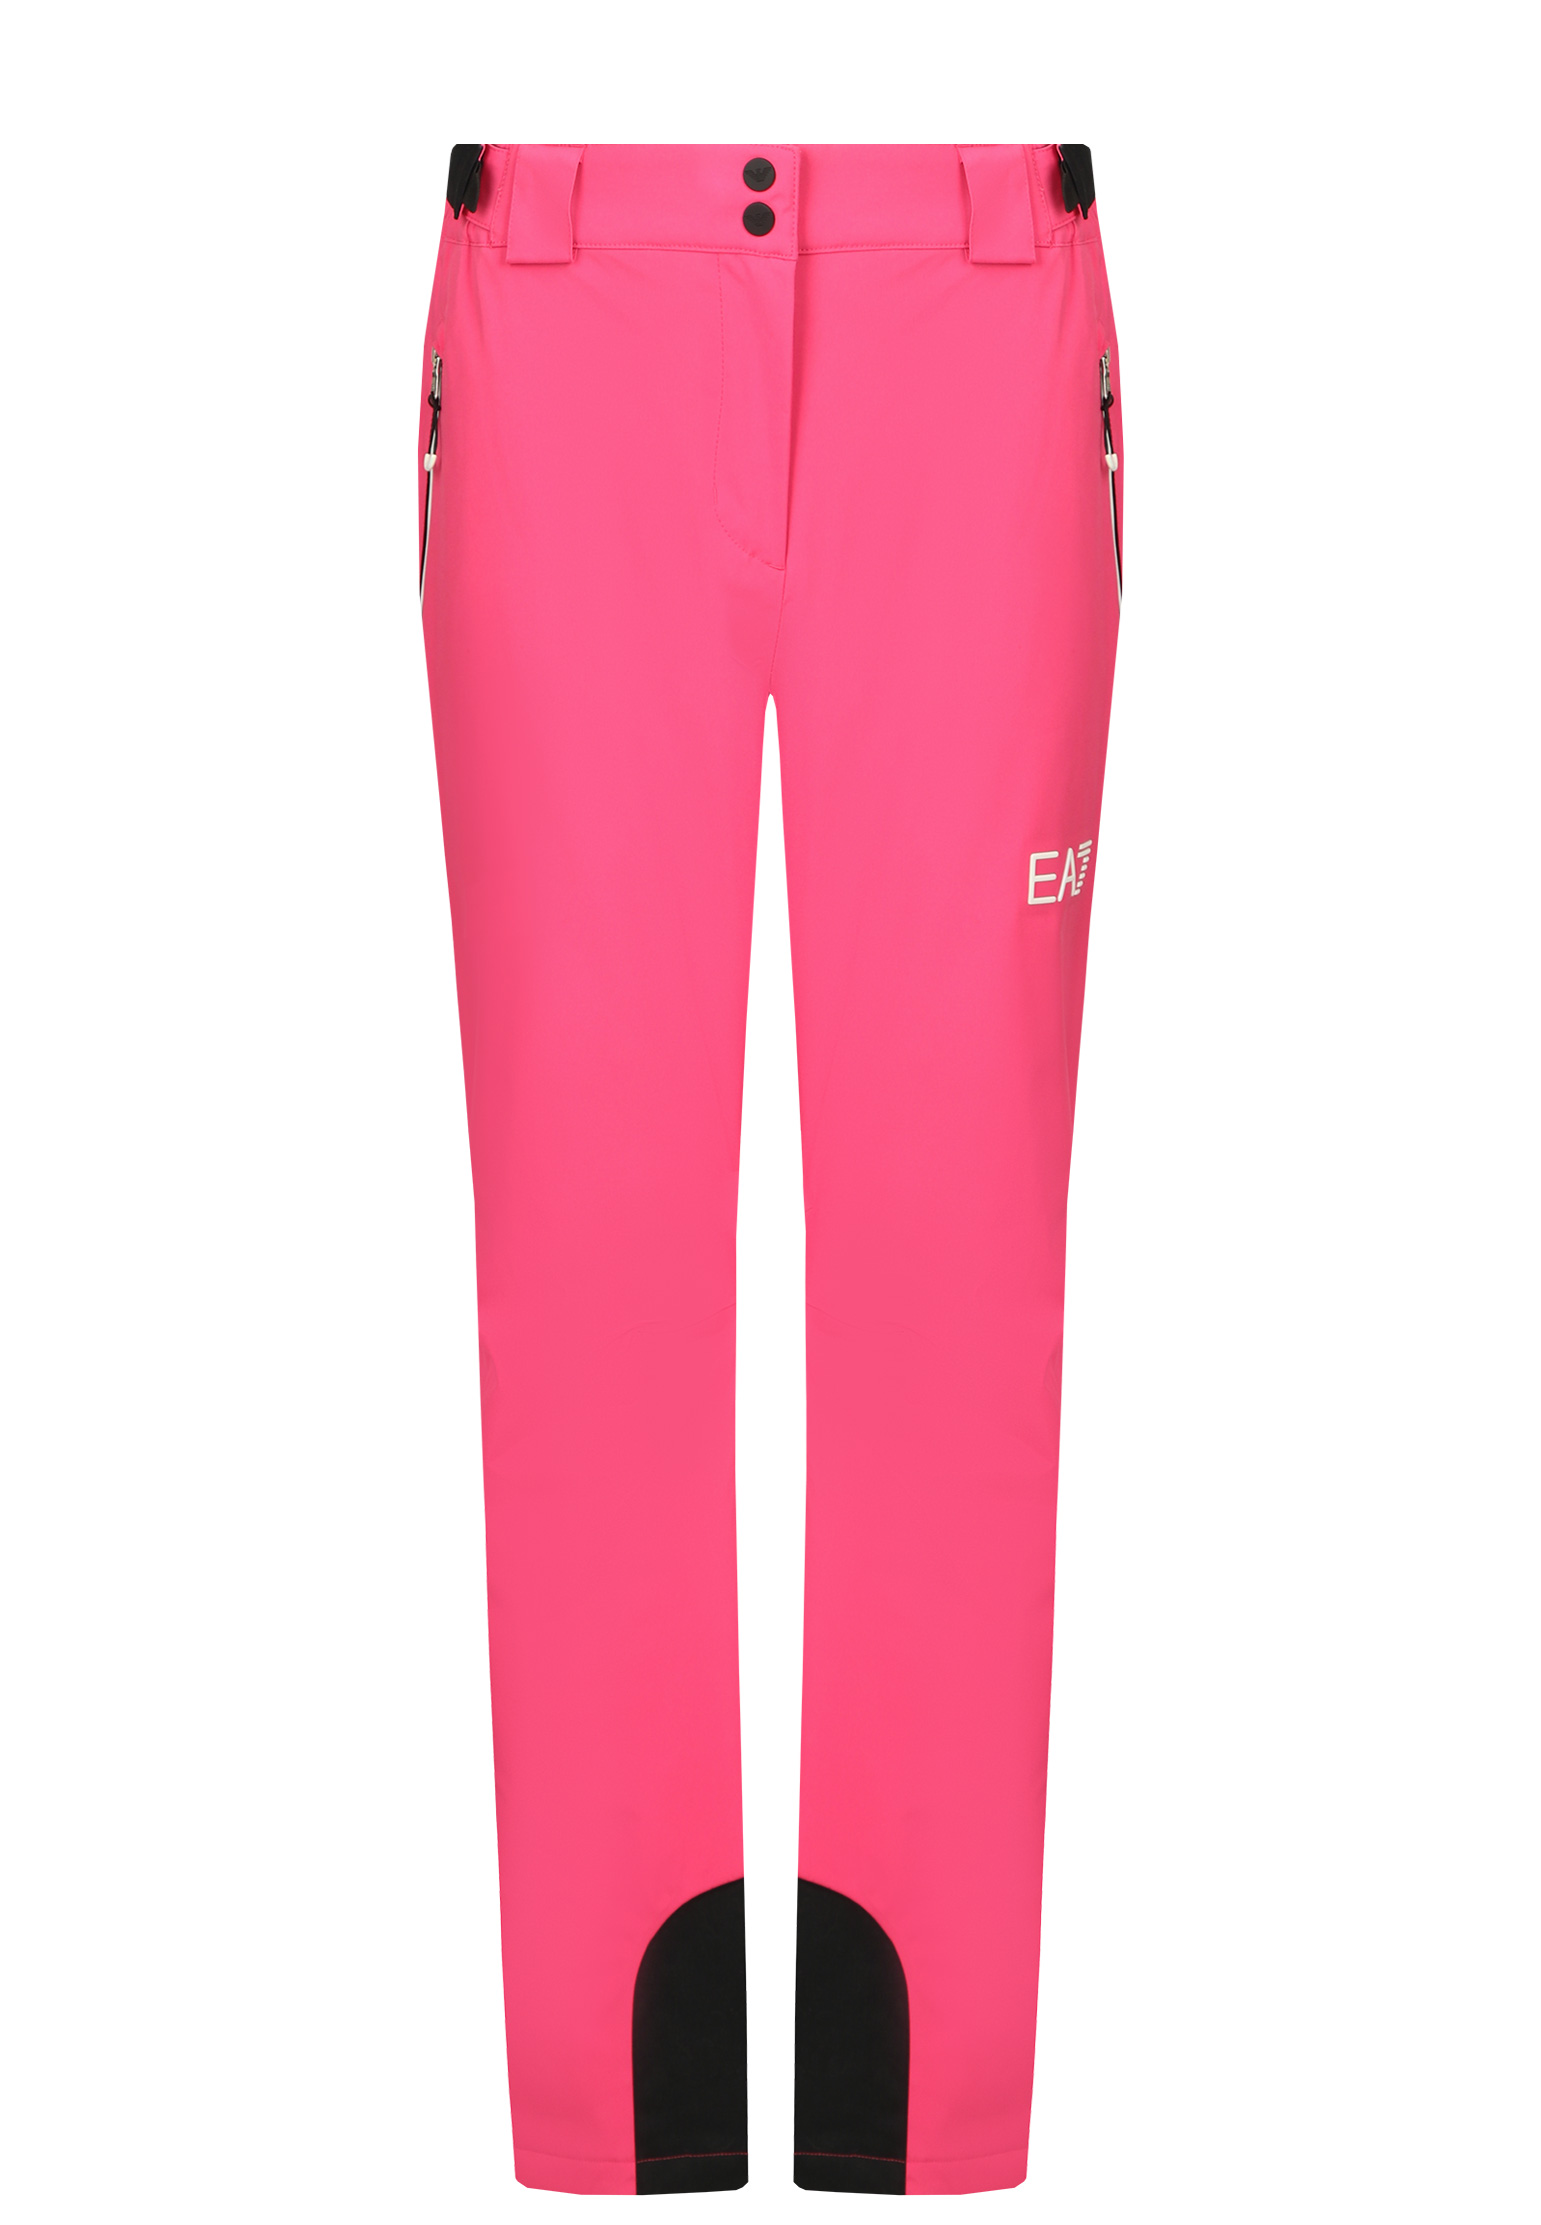 Спортивные брюки женские EA7 146322 розовые S